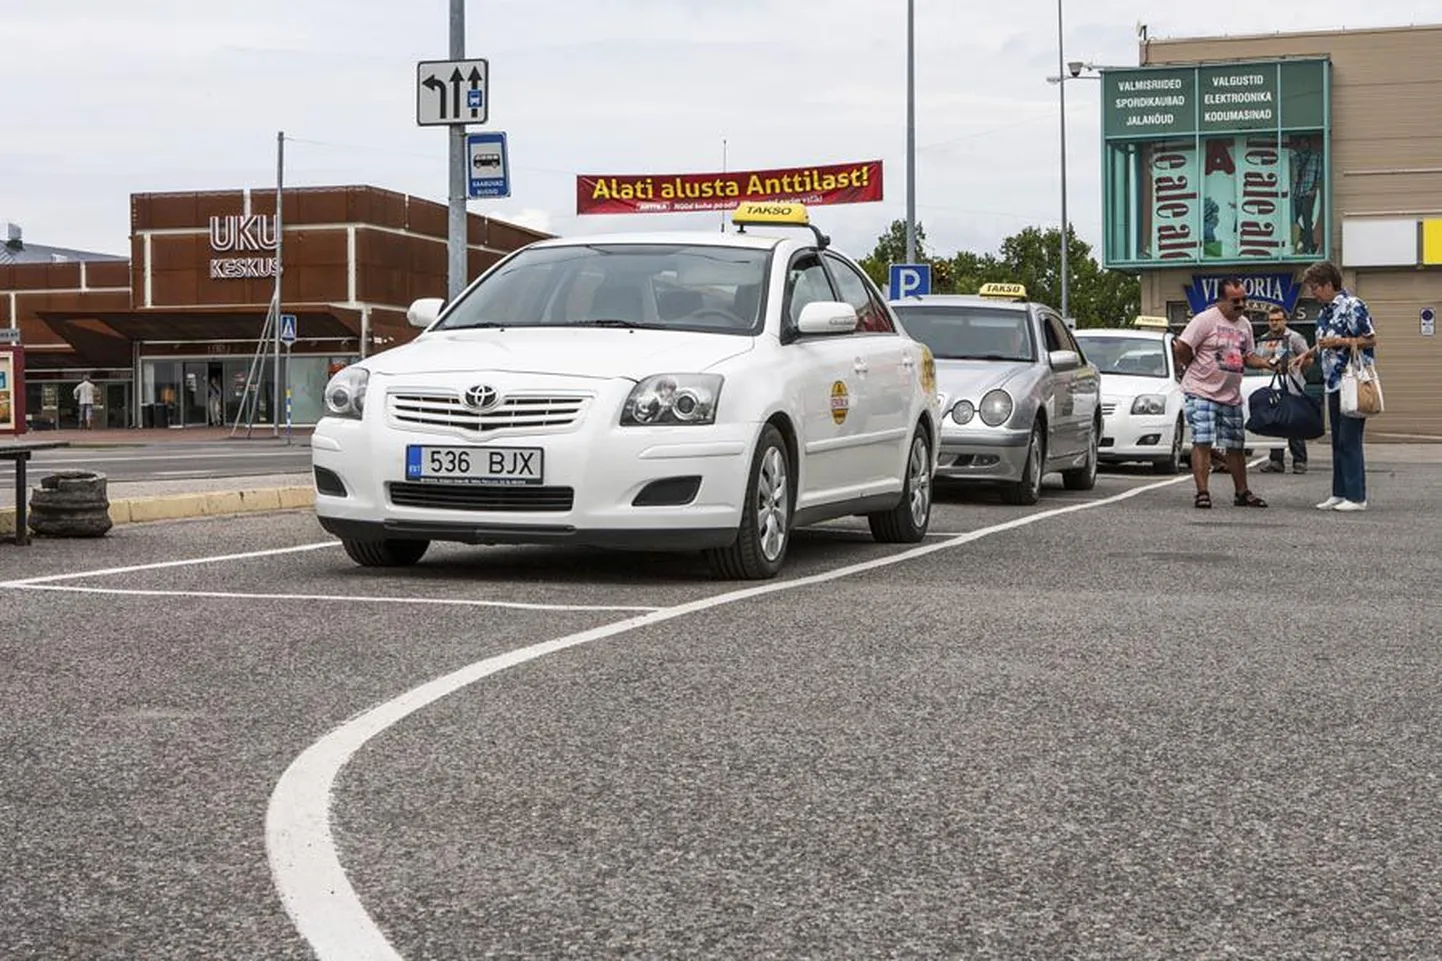 Tulevikus hakkavad Centrumi parklas parkivad ning numbril 1200 tellimusi vastu võtvad sõiduvahendid kandma Tulika Takso kaubamärki. Siis on ka kõik autod valged.